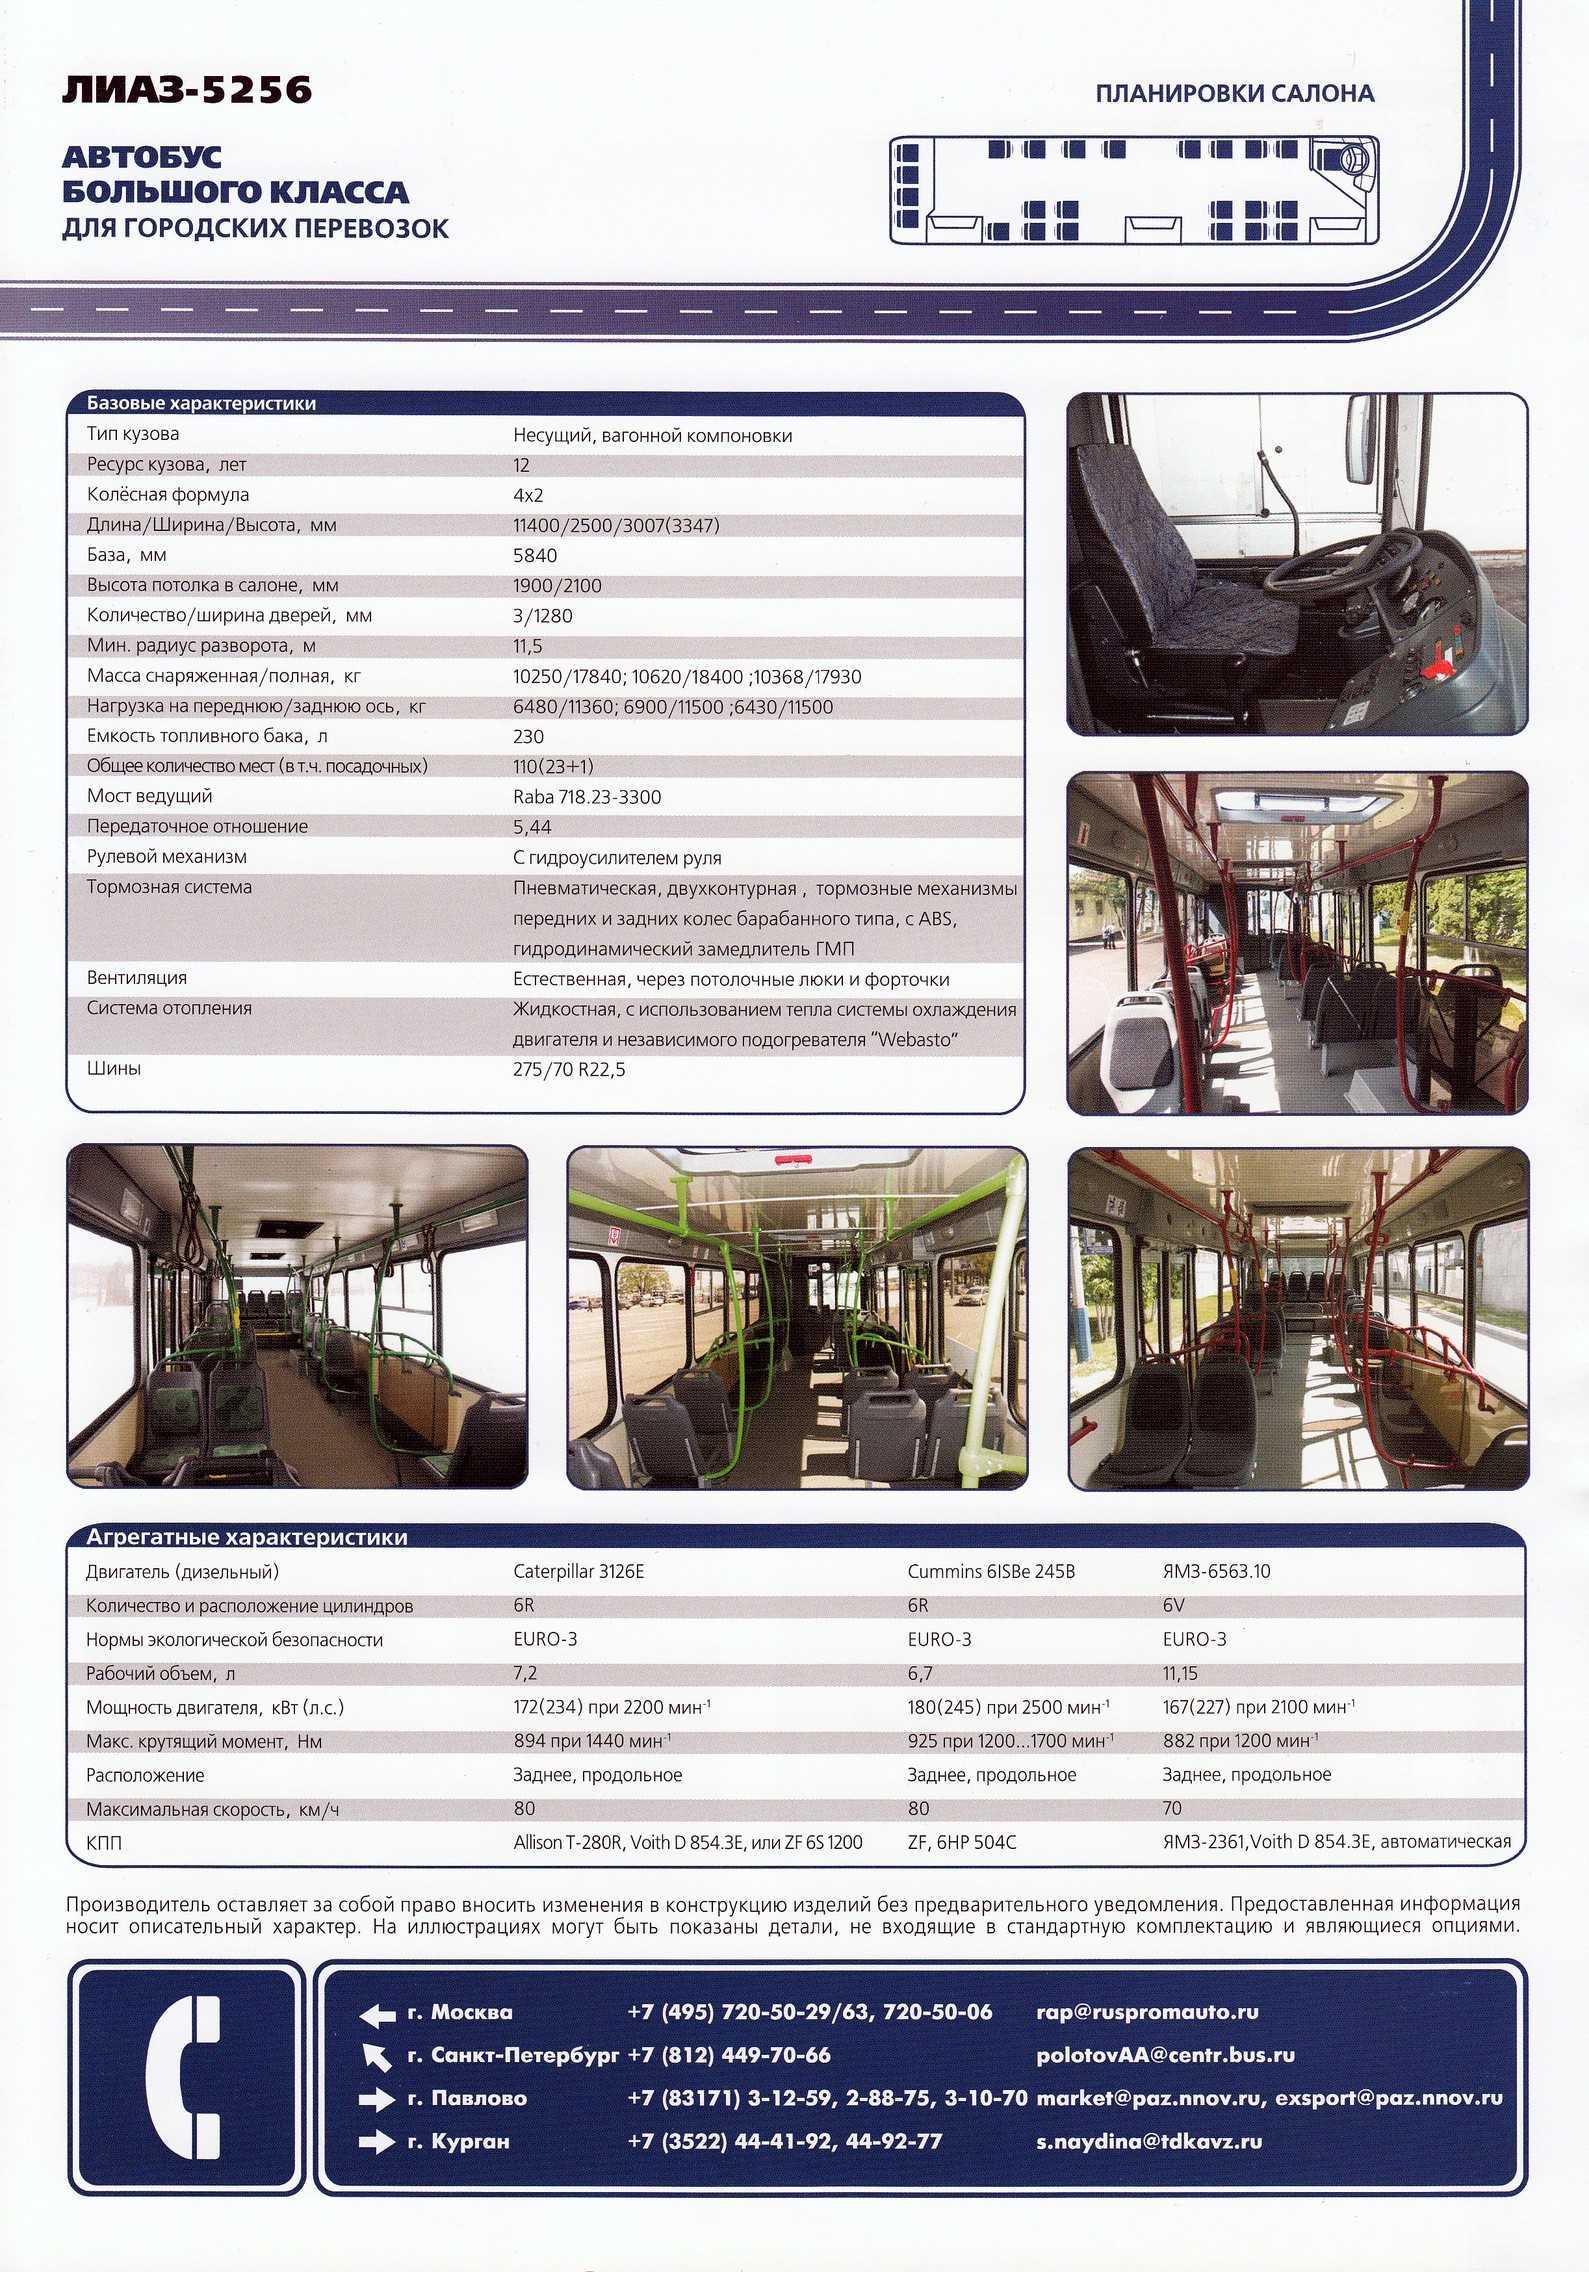 Лиаз-5292 технические характеристики и размеры, кабина и салон